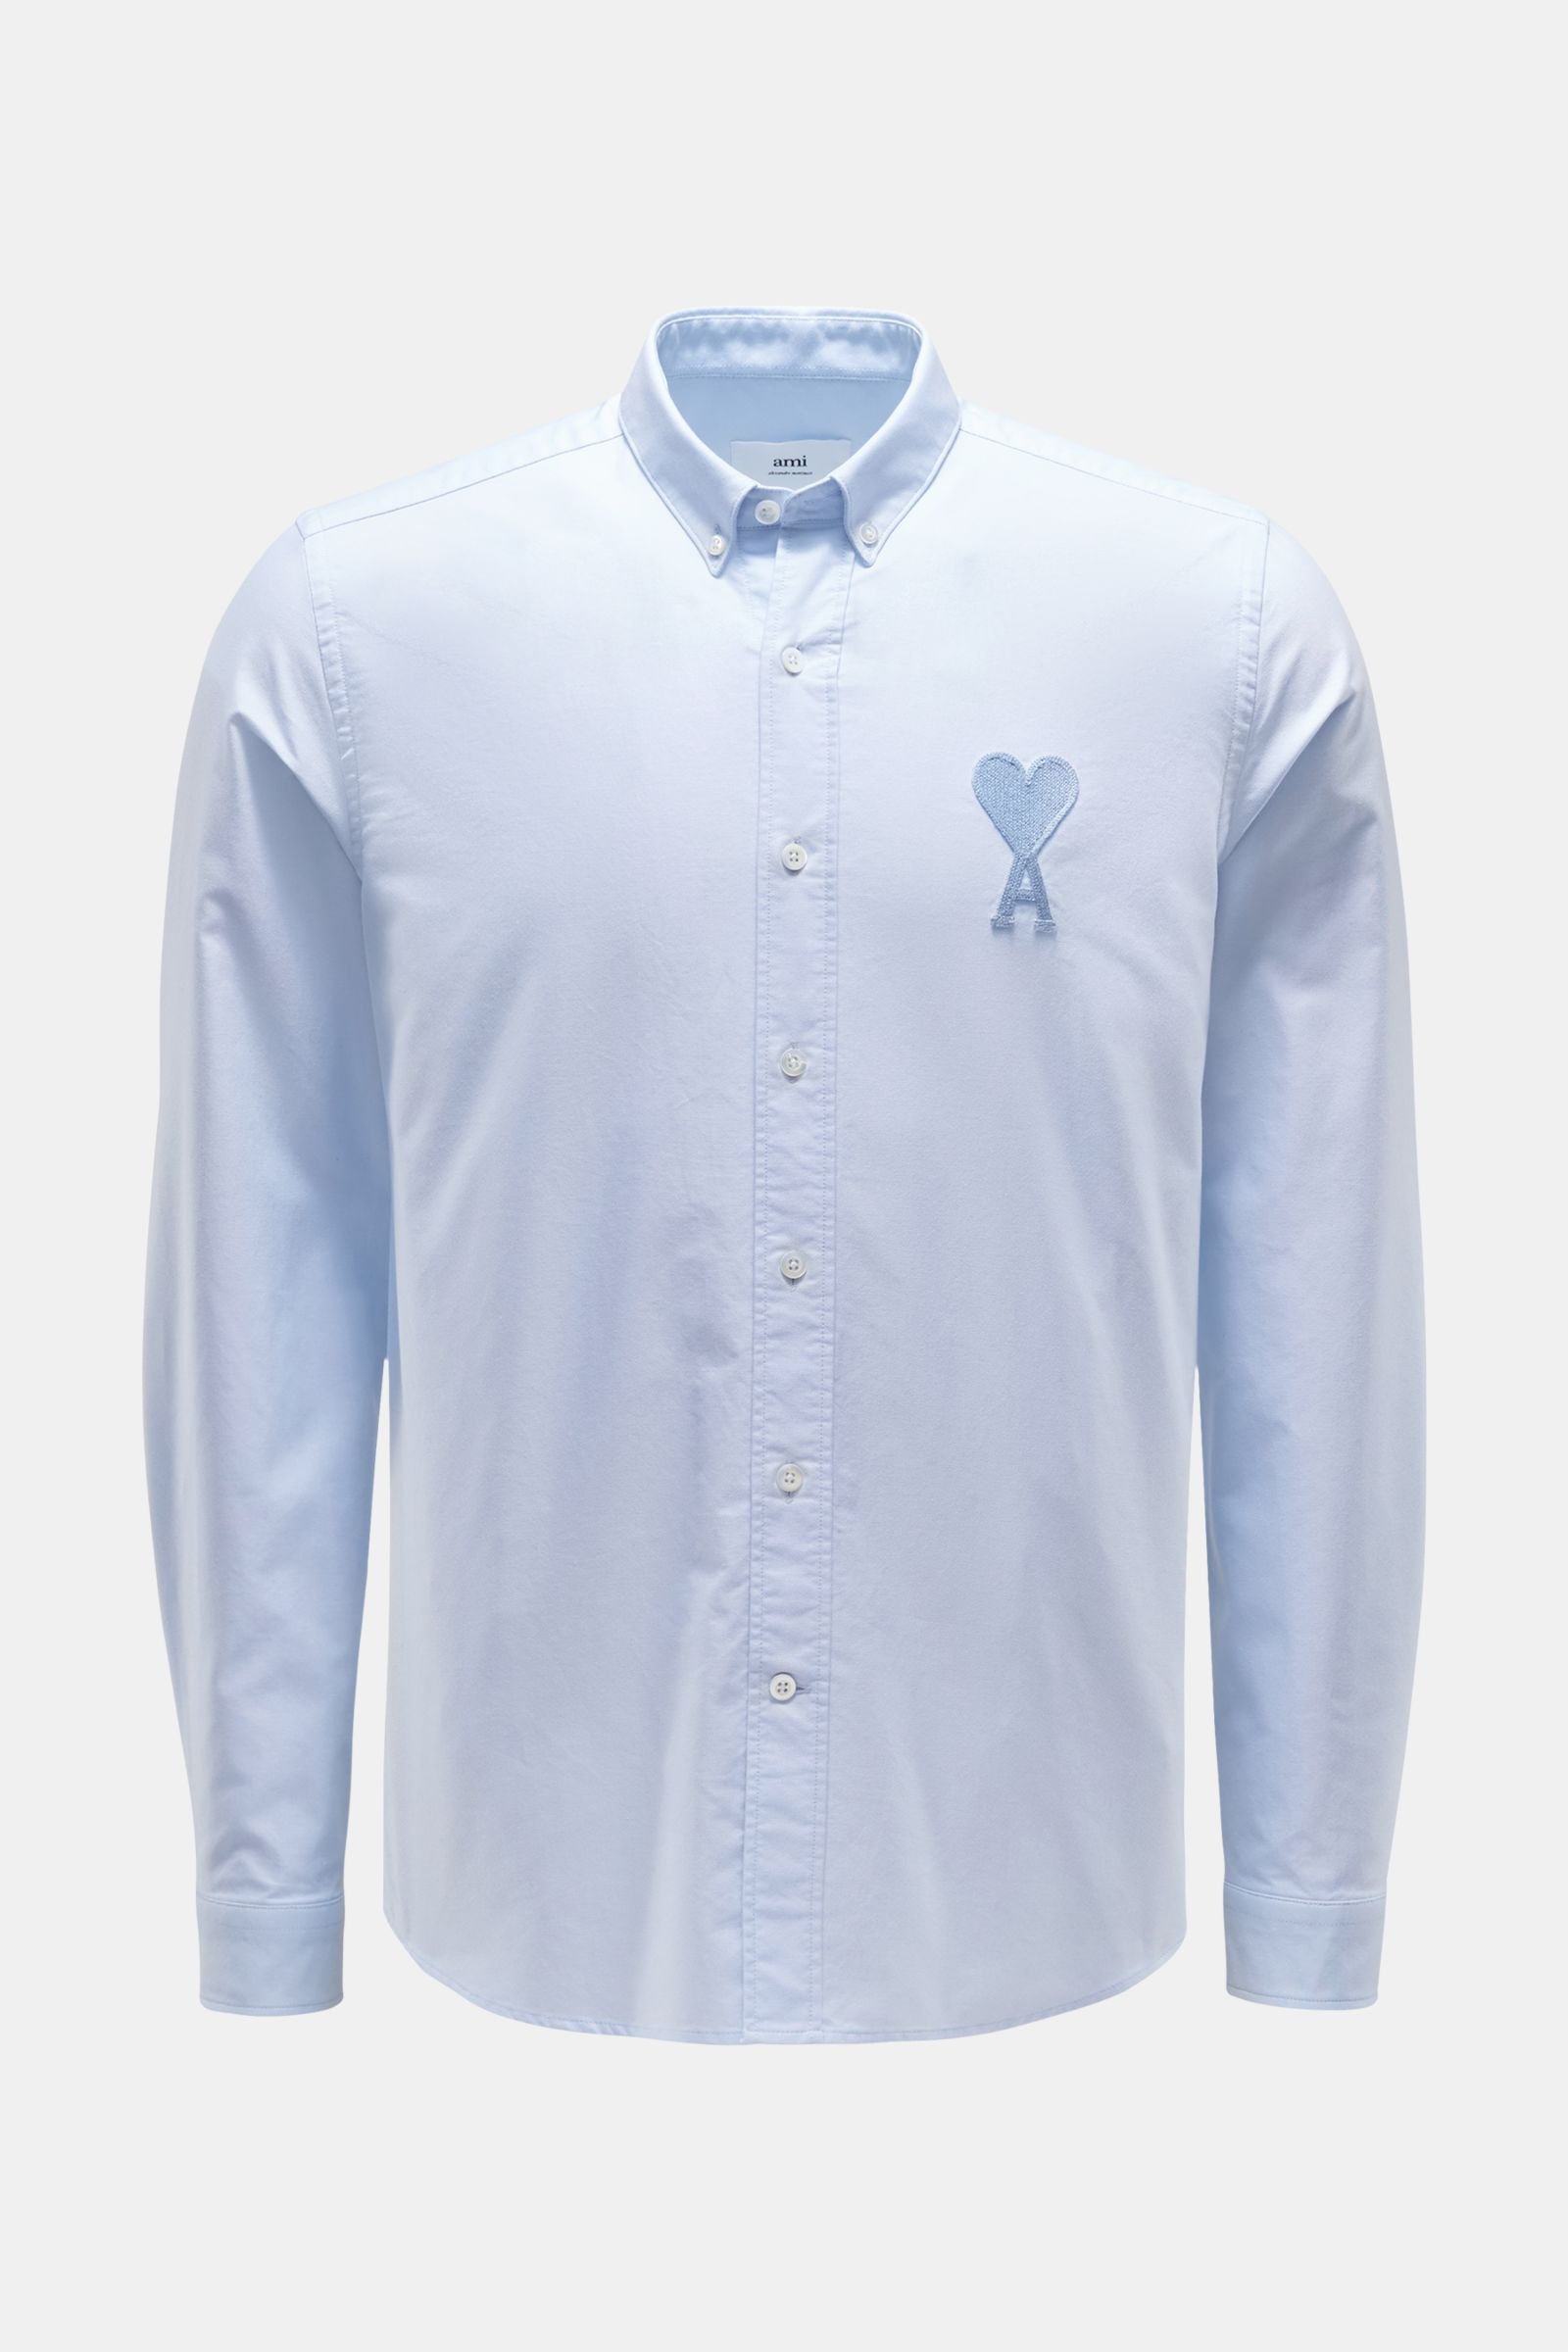 Oxford shirt button-down collar light blue